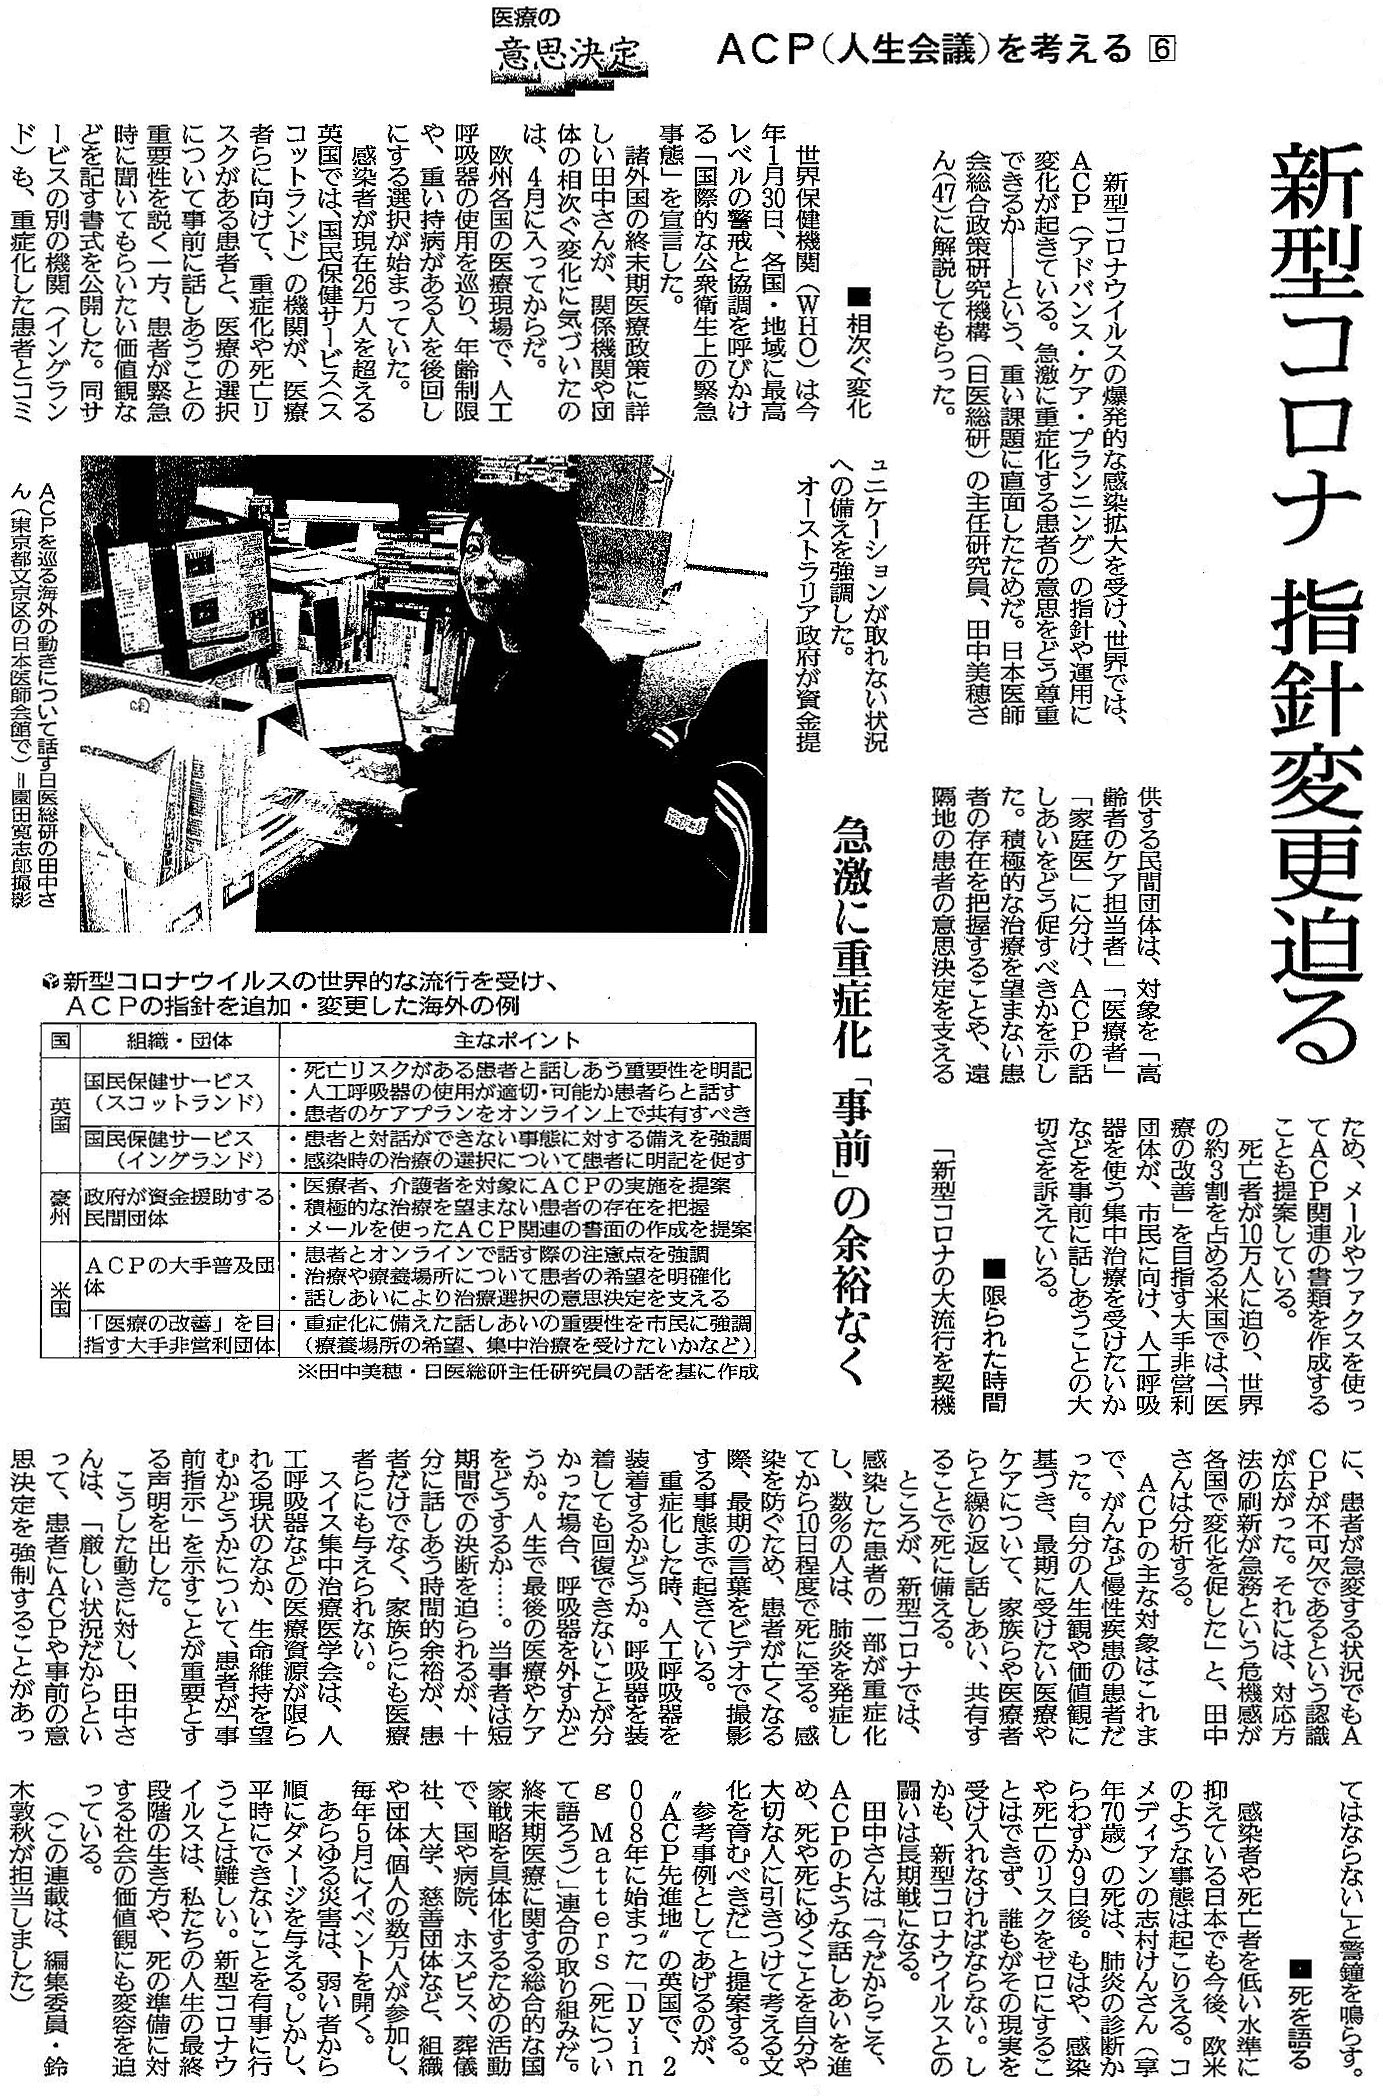 読売新聞 2020年5月27日掲載記事